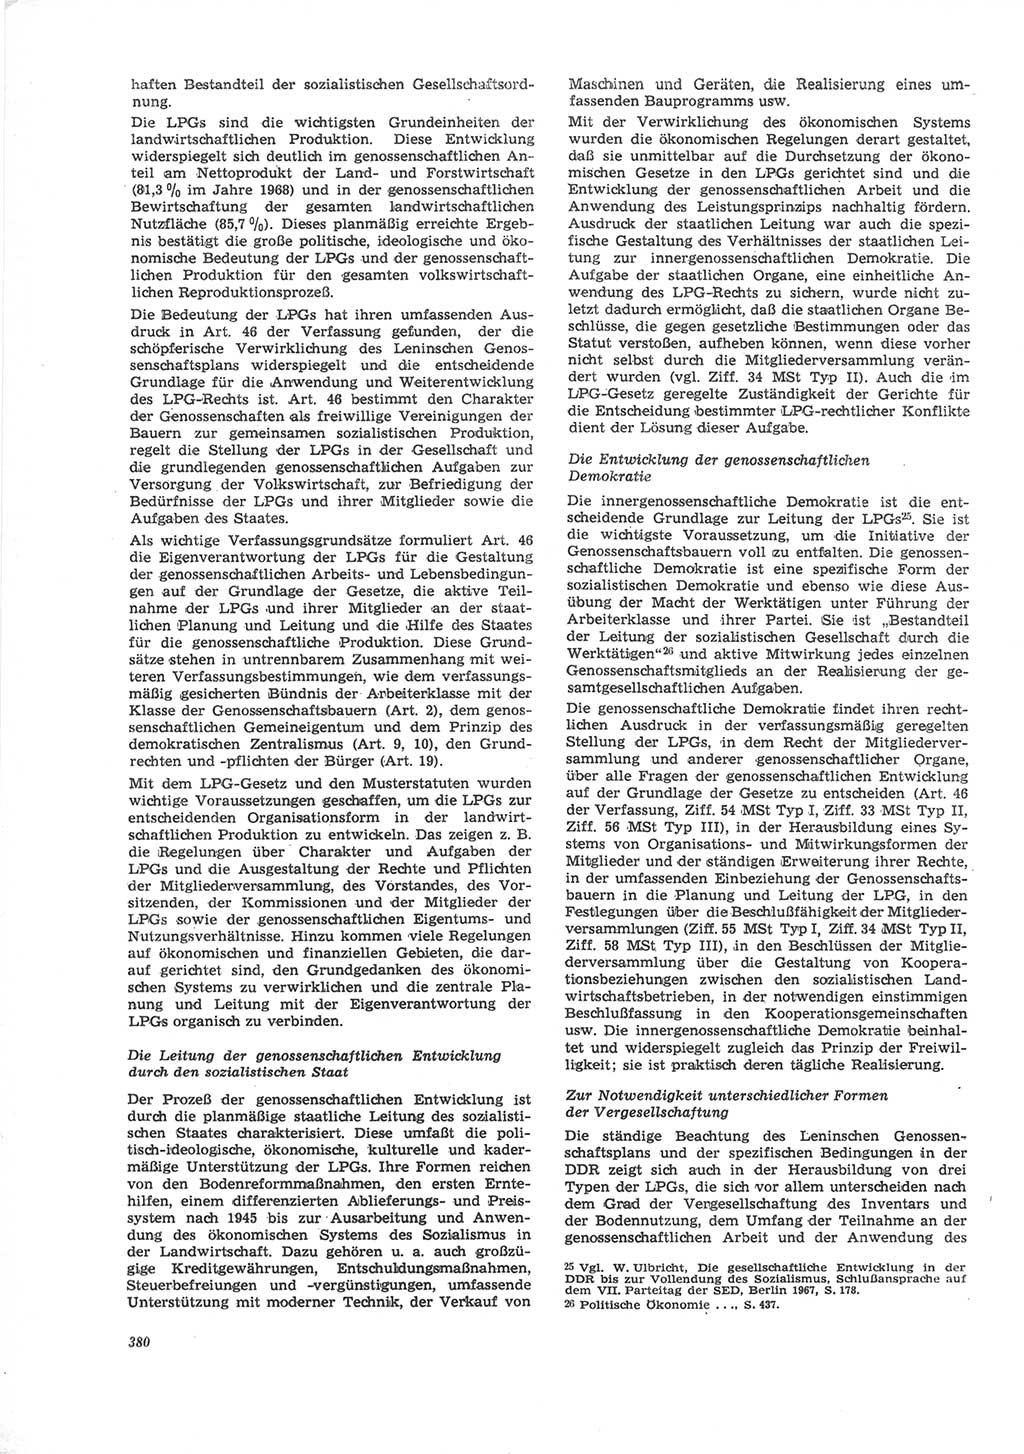 Neue Justiz (NJ), Zeitschrift für Recht und Rechtswissenschaft [Deutsche Demokratische Republik (DDR)], 24. Jahrgang 1970, Seite 380 (NJ DDR 1970, S. 380)